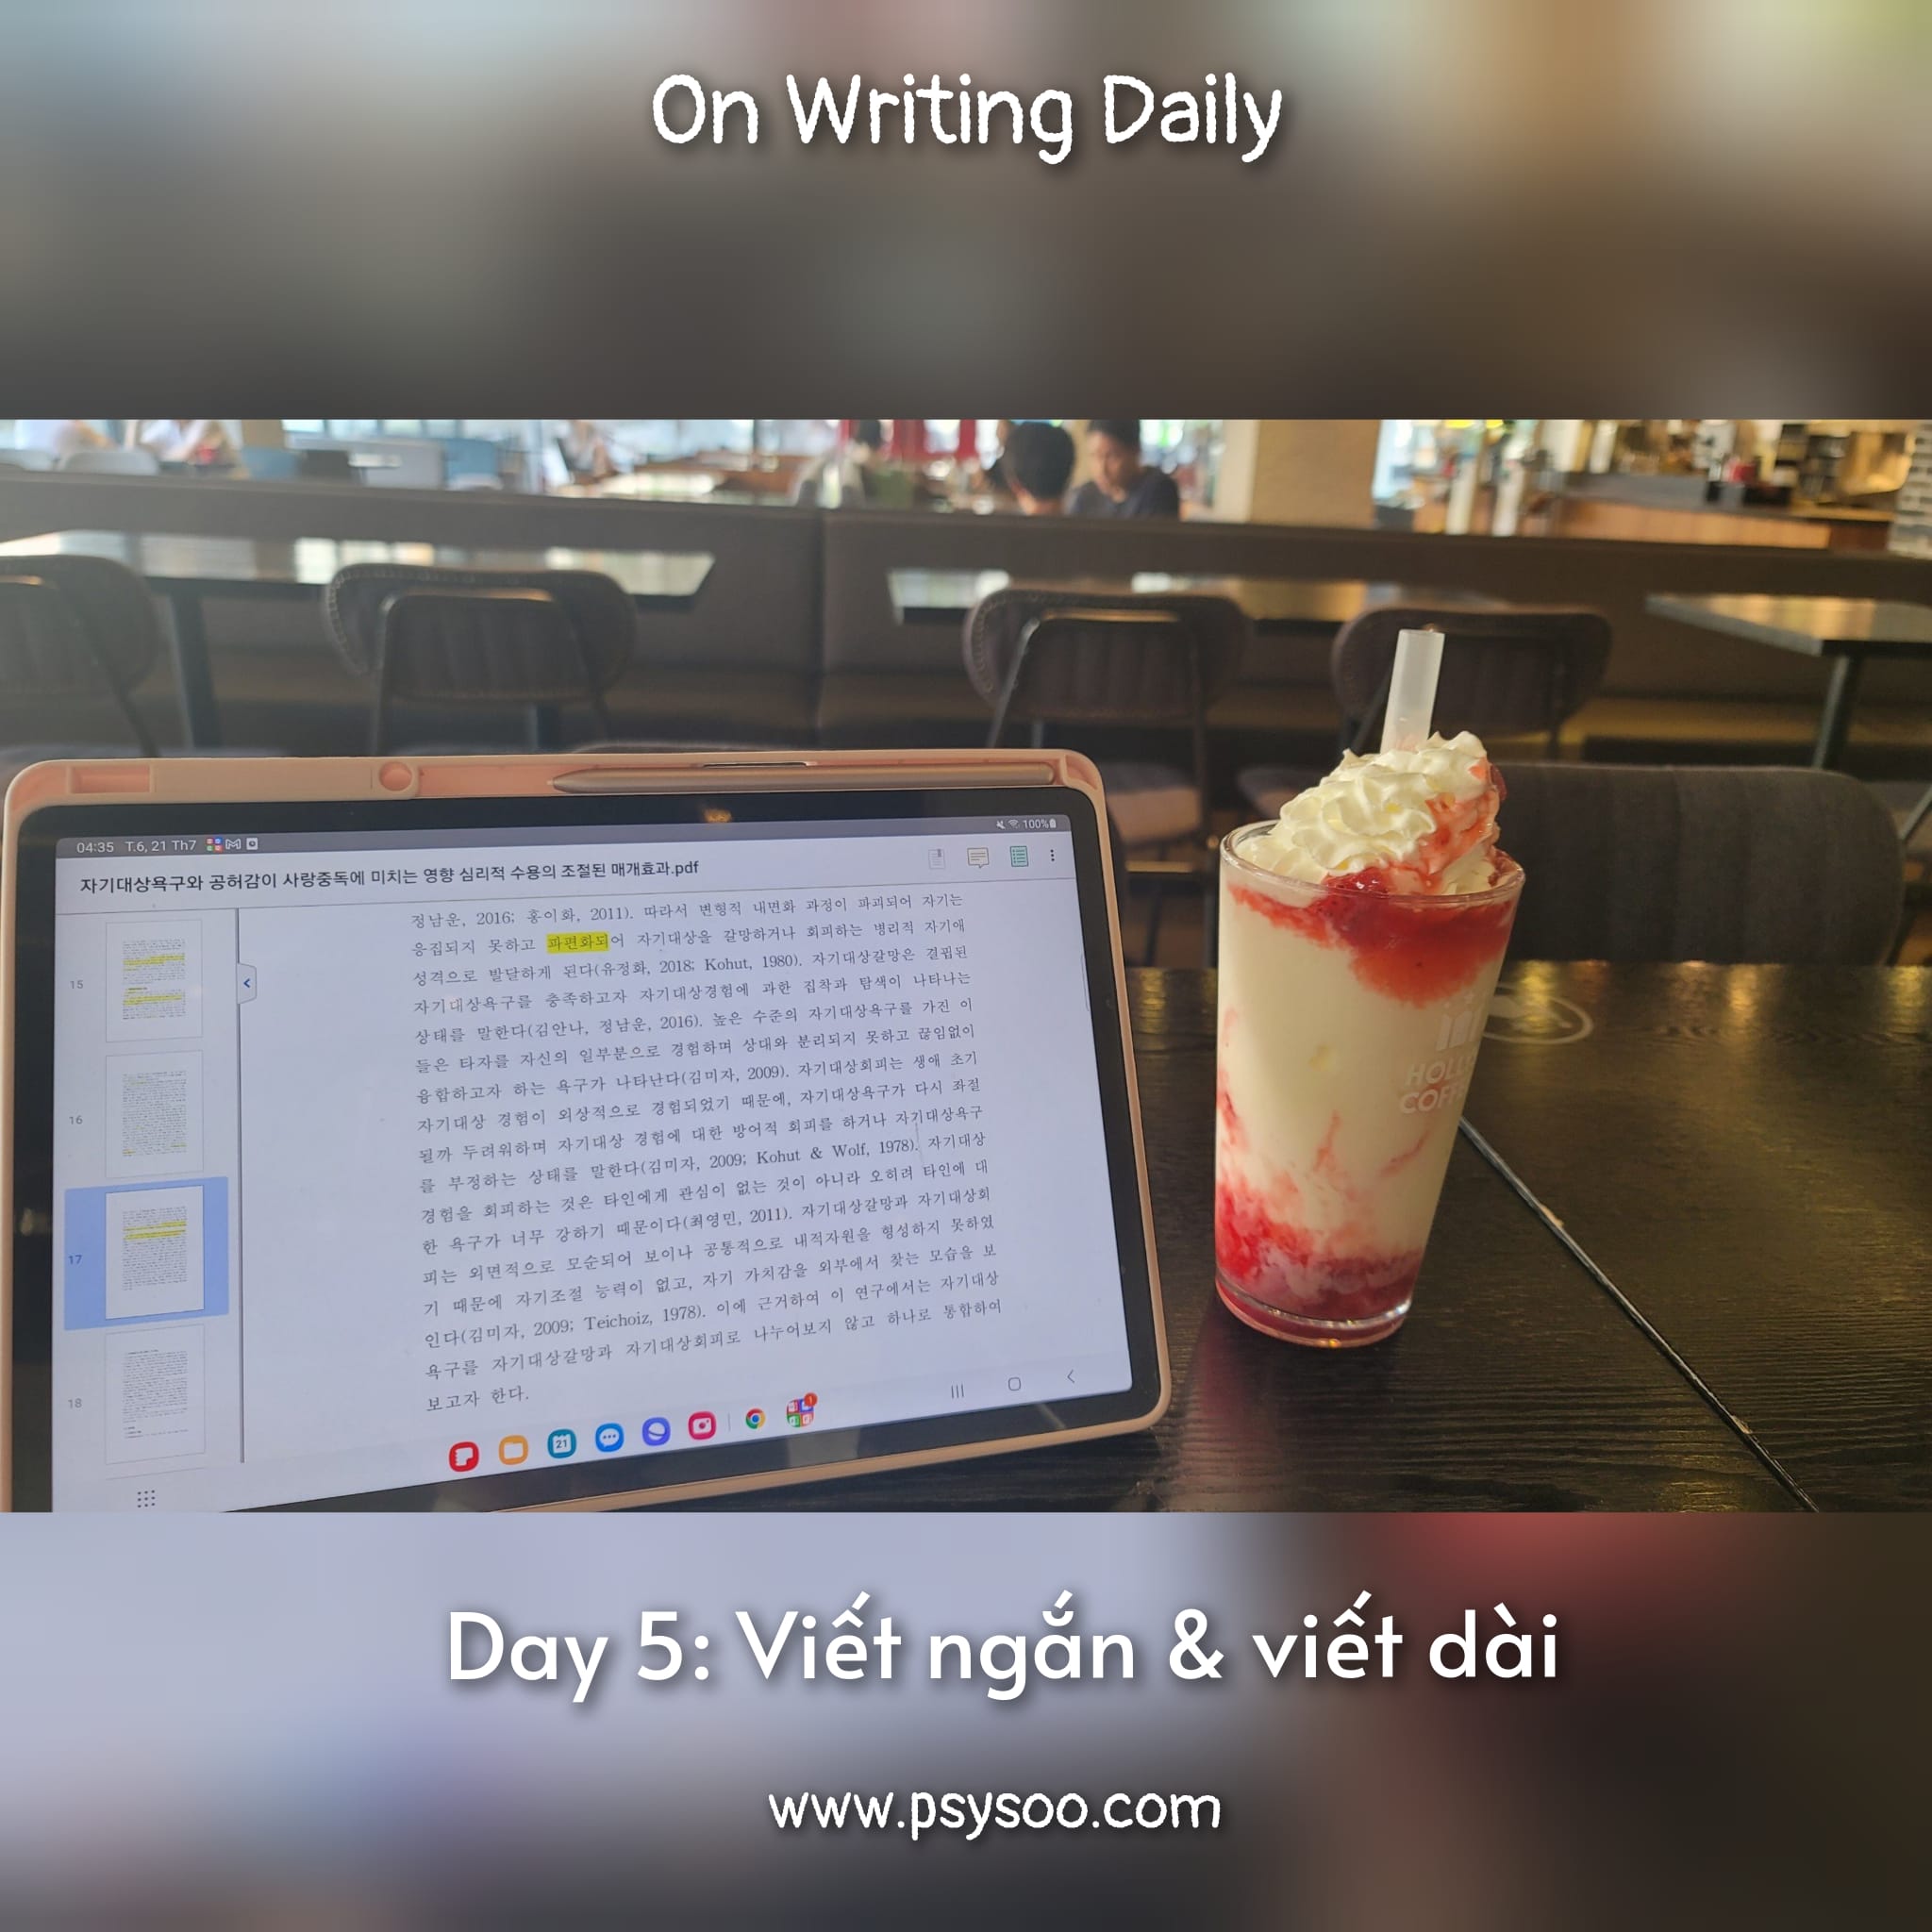 Day 5: Viết ngắn và viết dài